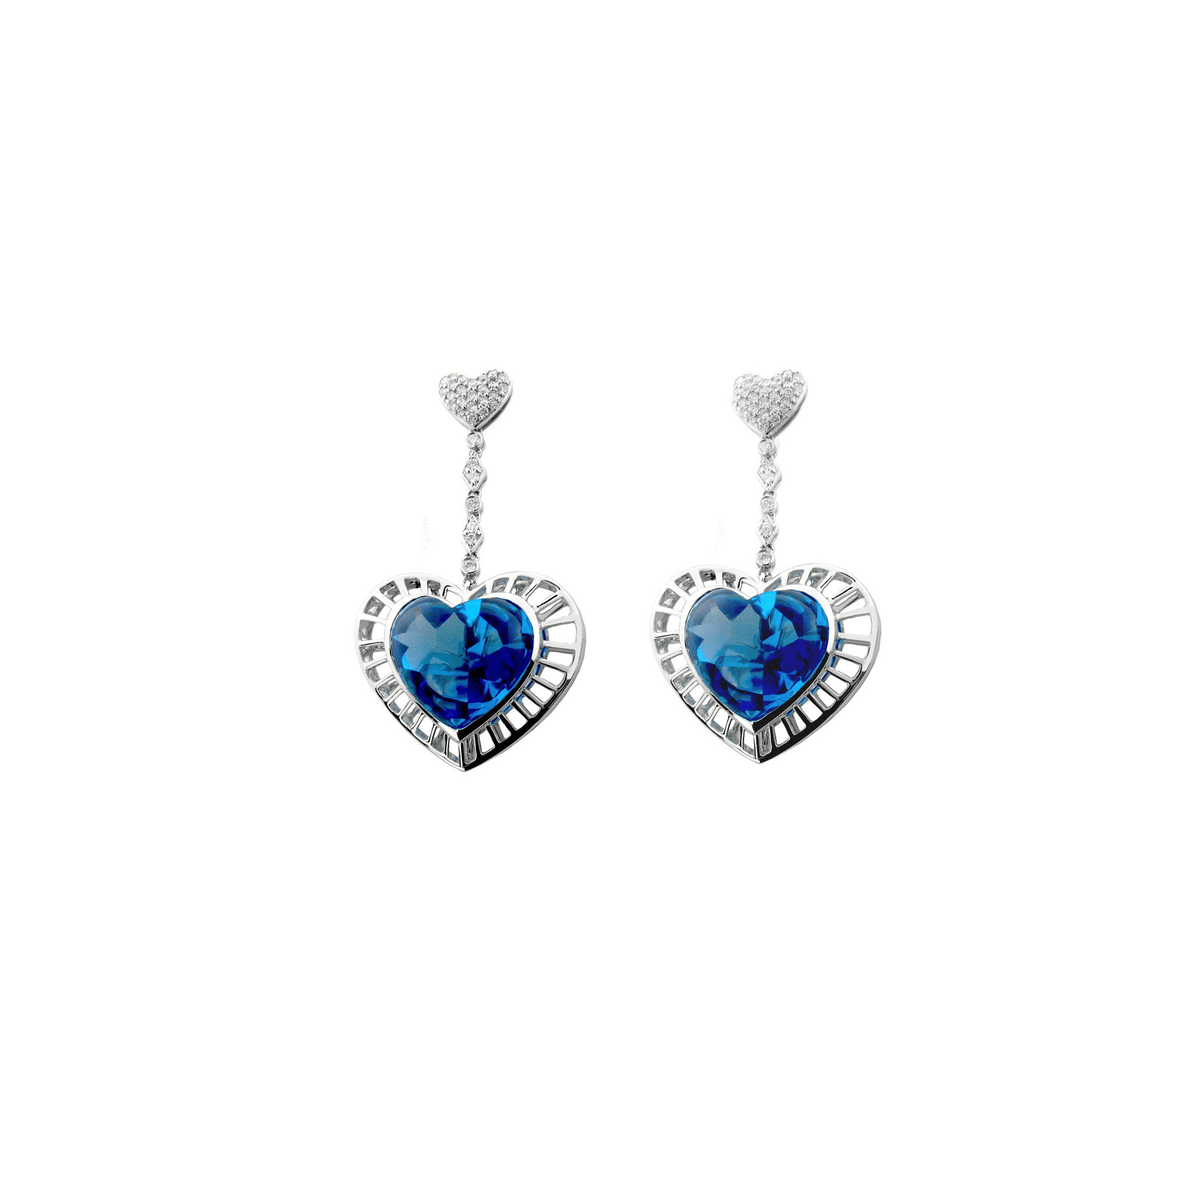 Women’s Heart Shaped Earrings - Blue Topaz Heart Earrings in 18 Karat White Gold